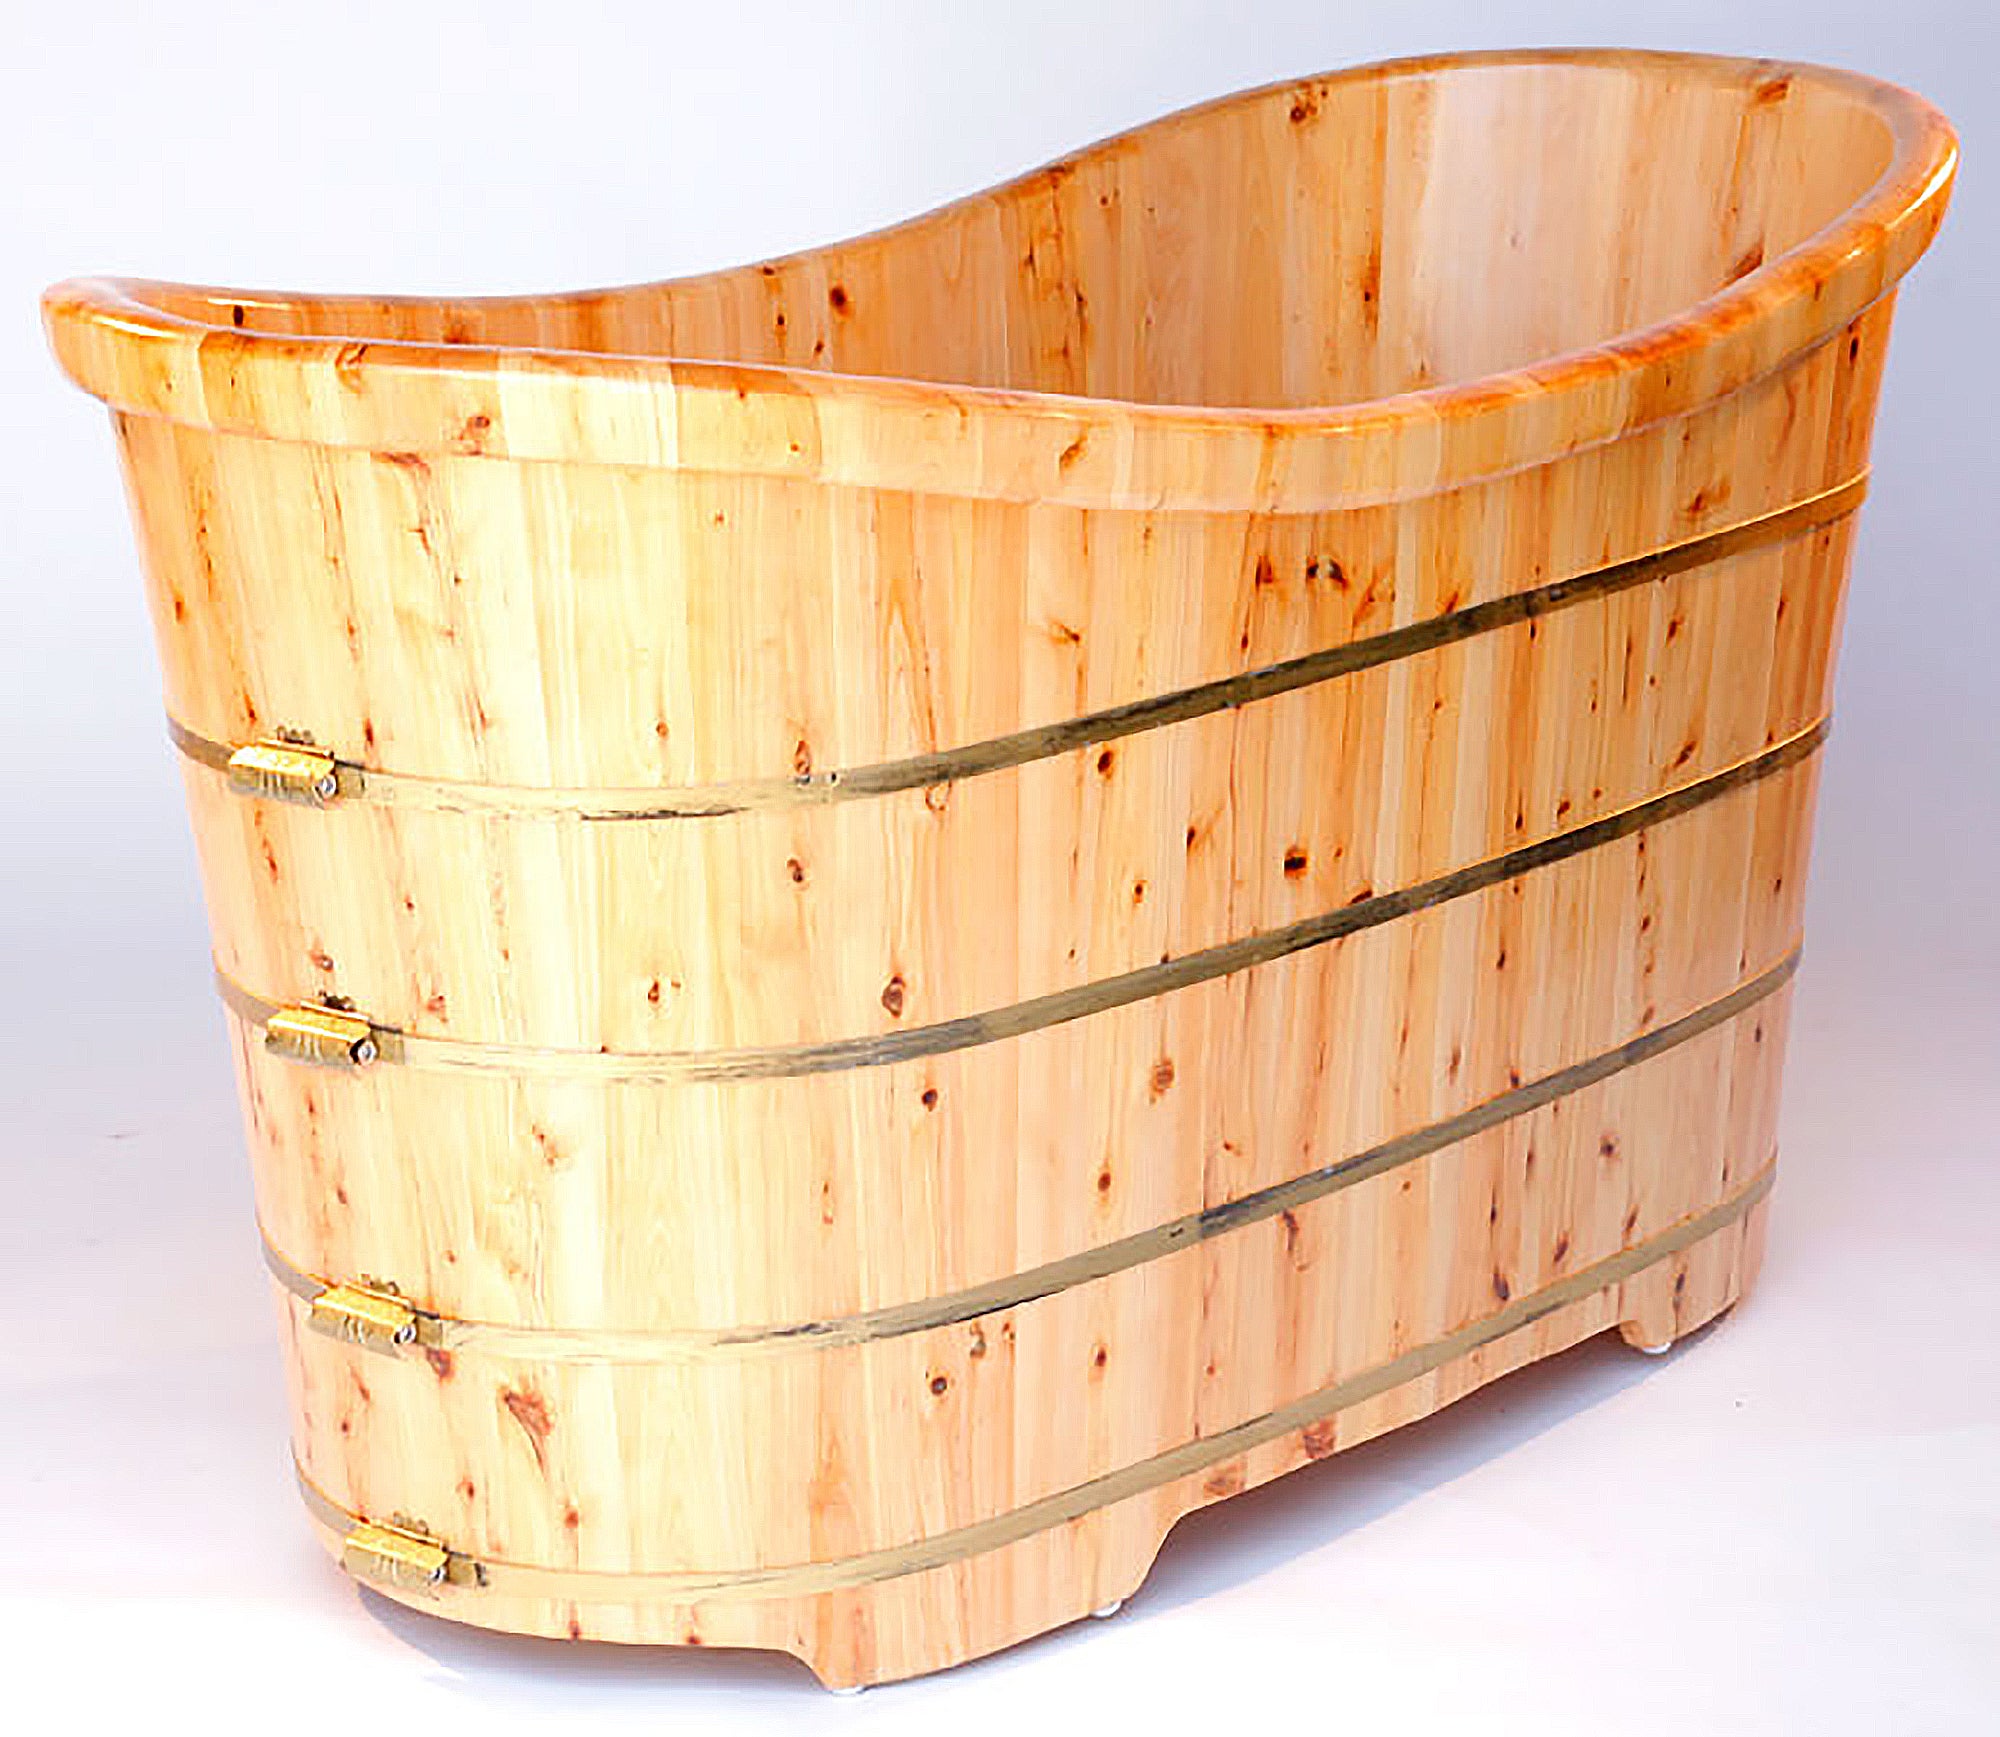 ALFI AB1105 Bathtub Free Standing Cedar Wooden (63-inch)